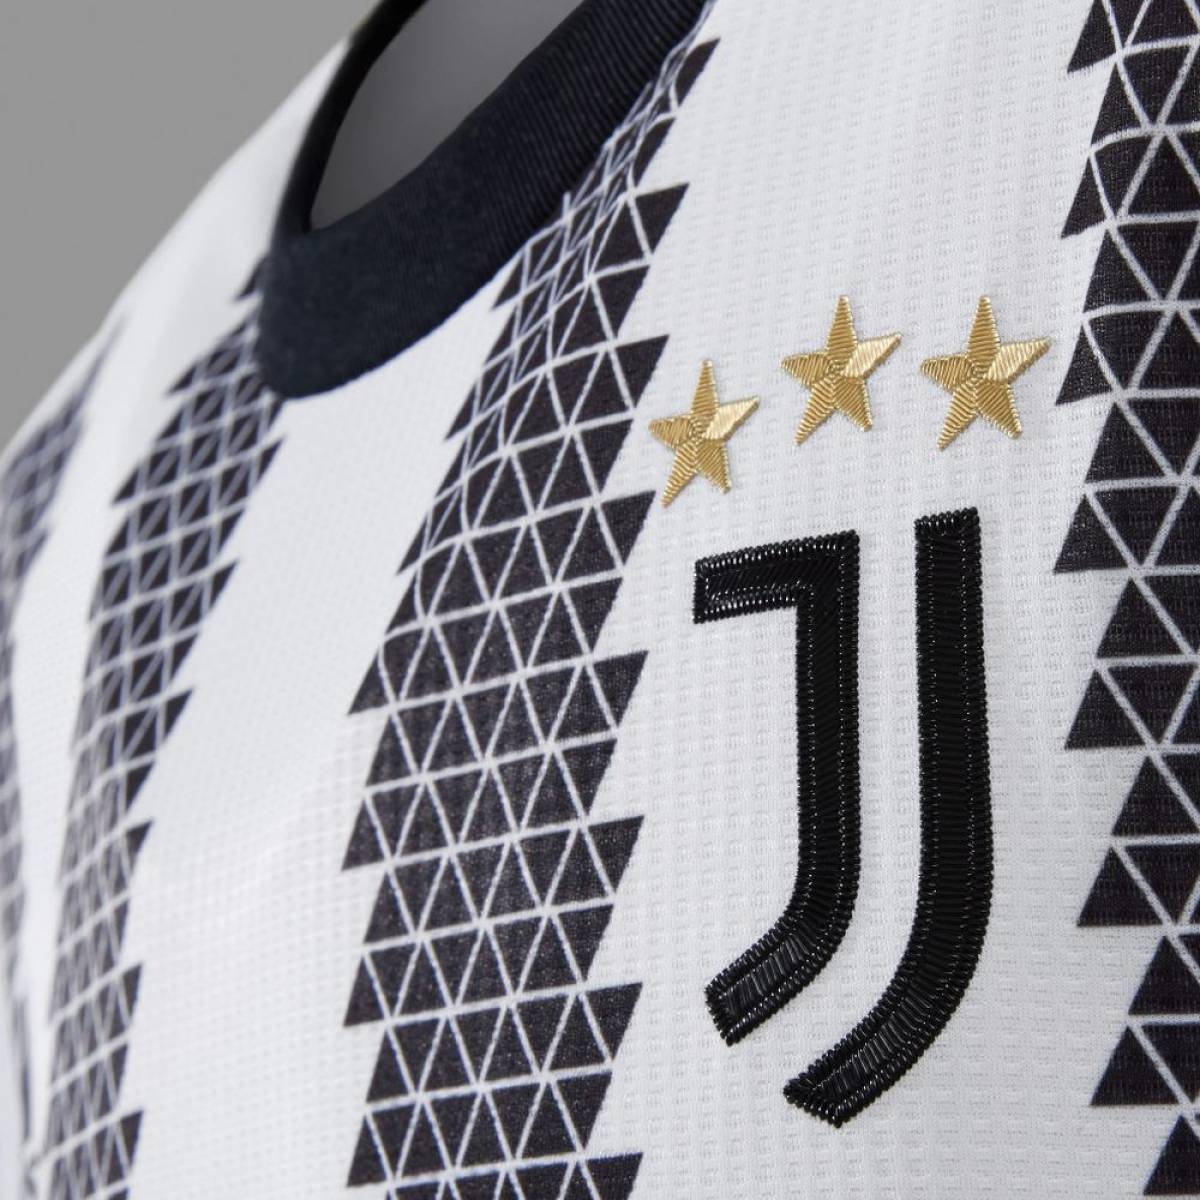 La Juventus dévoile son nouveau maillot domicile 2022/23 !